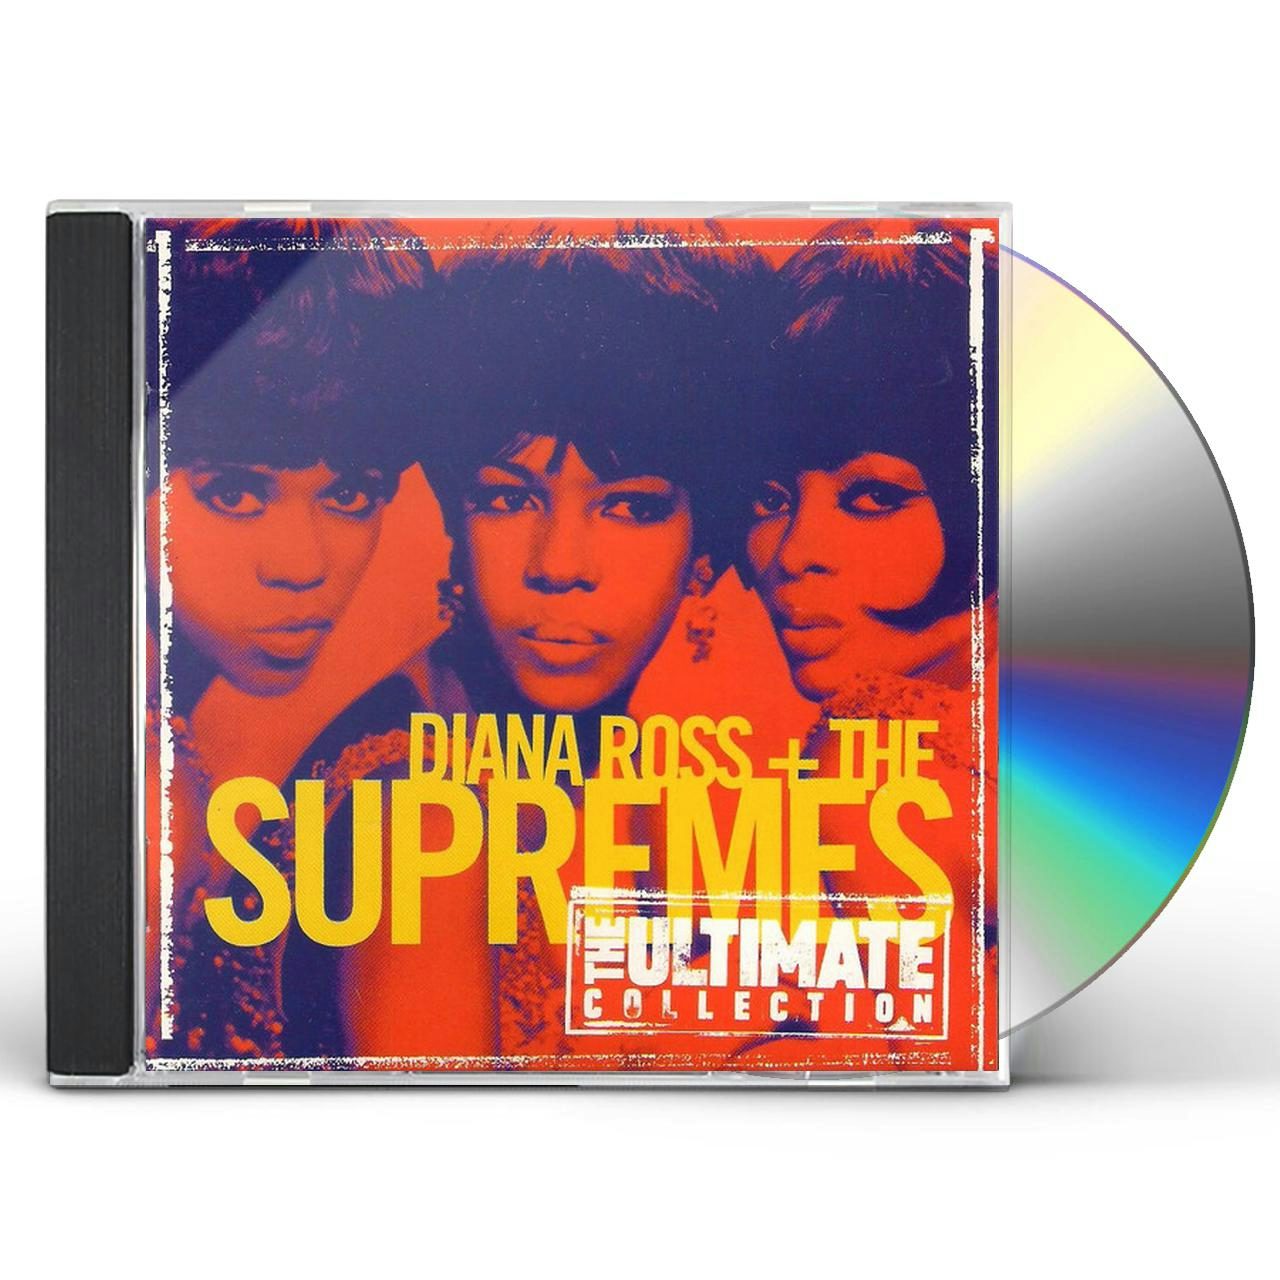 ダイアナ・ロス&シュープリームス 50th シングルス・コレクション 3CD-